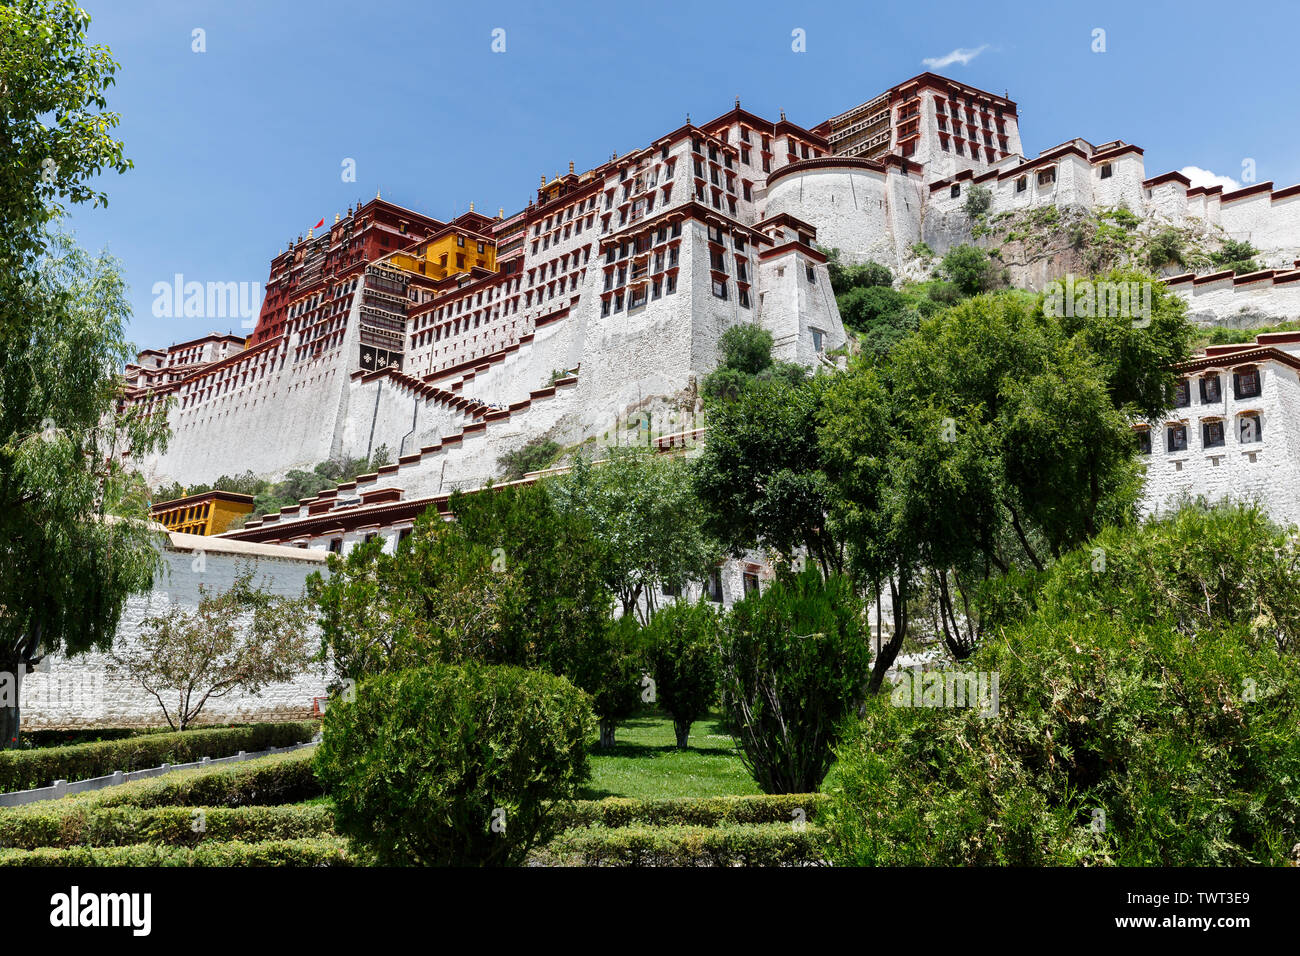 Seite Blick auf den Potala Palast mit bue Himmel. Im Vordergrund Bäume und Sträucher. Unesco Weltkulturerbe und Zentrum des tibetischen Buddhismus. Stockfoto